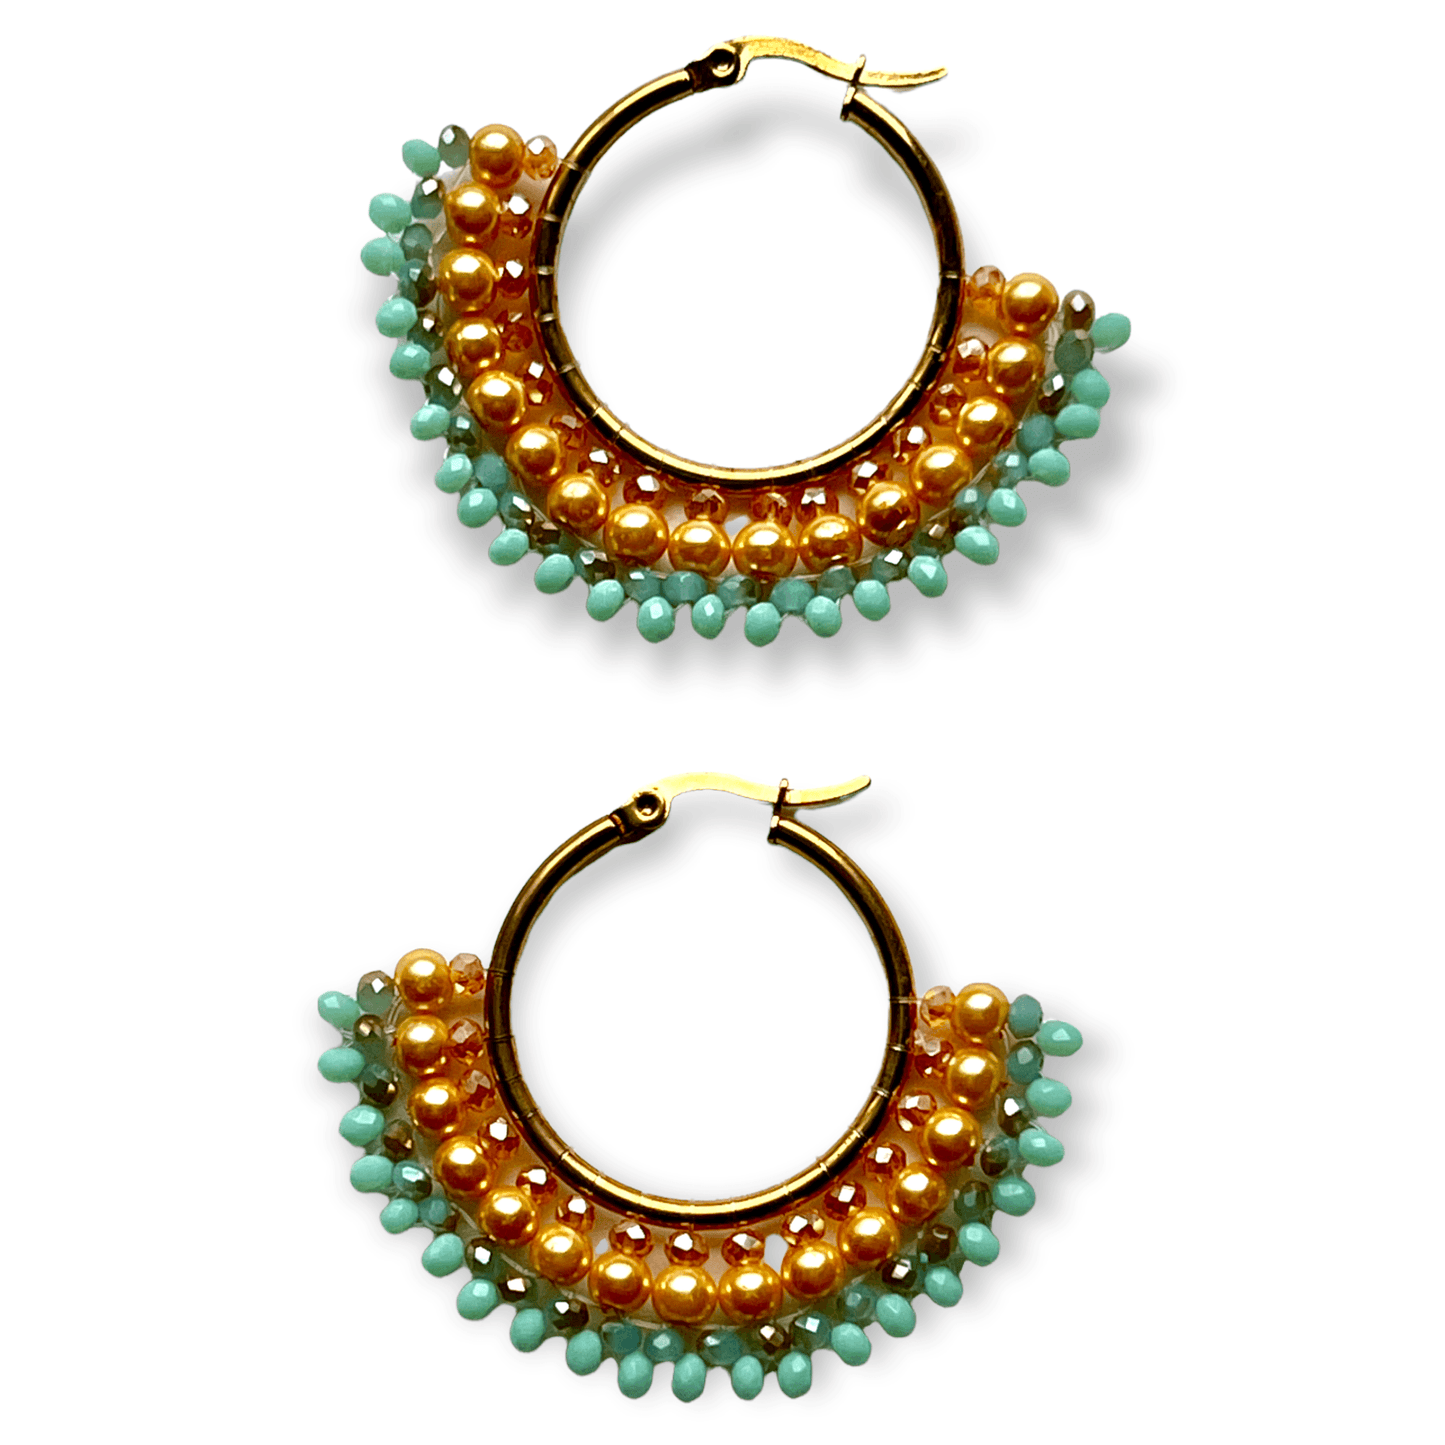 Colorful beaded hoop statement earrings - Sundara Joon